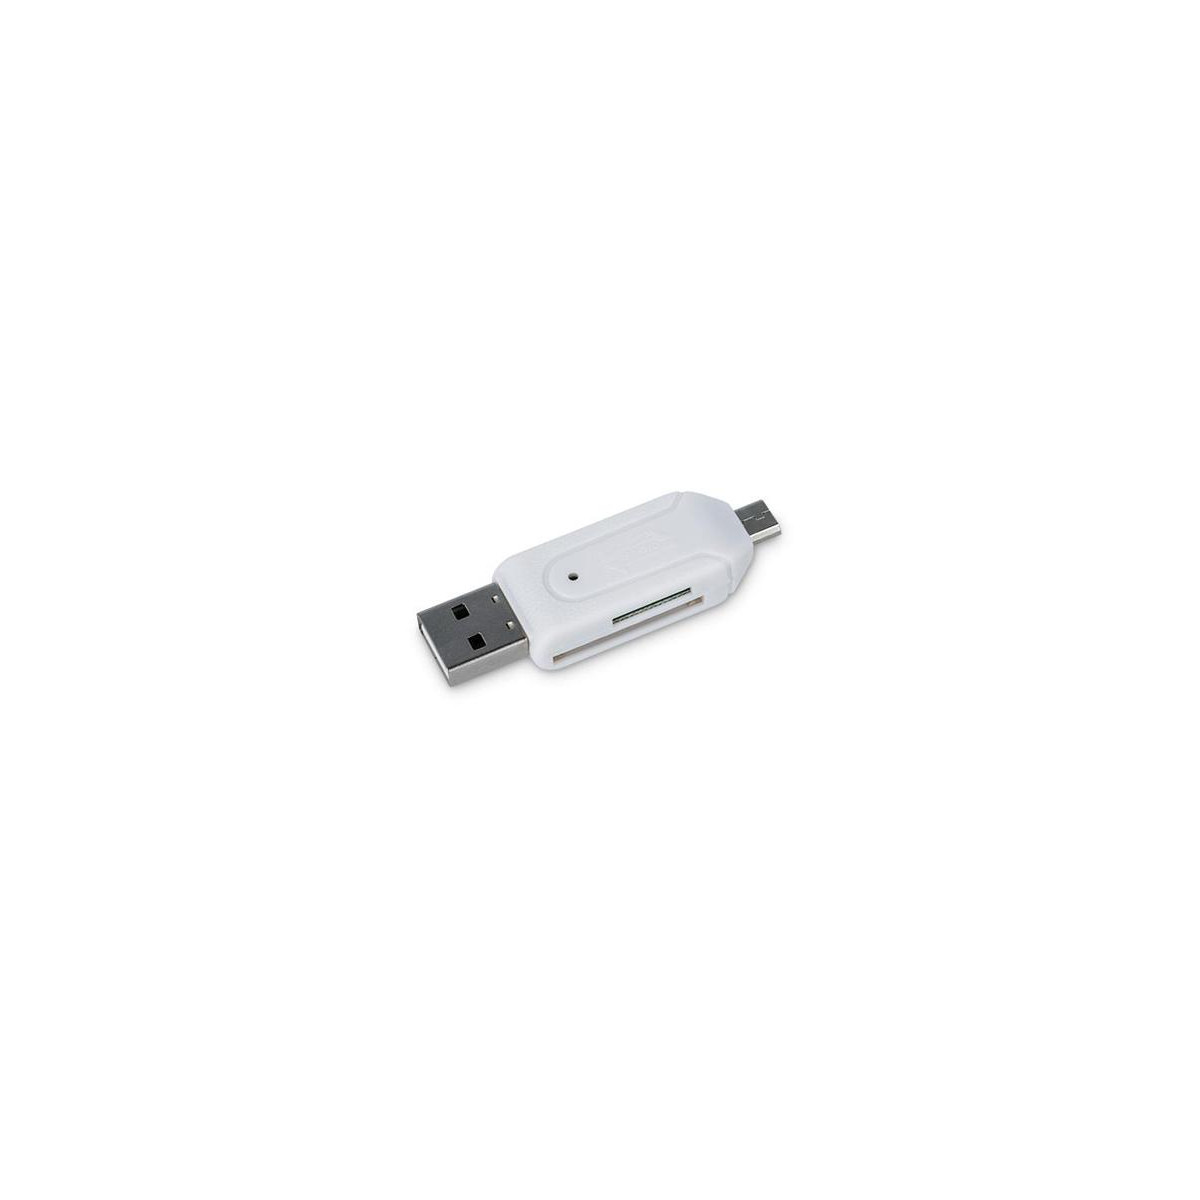 More about Čtečka paměťových karet FOREVER Micro USB/USB